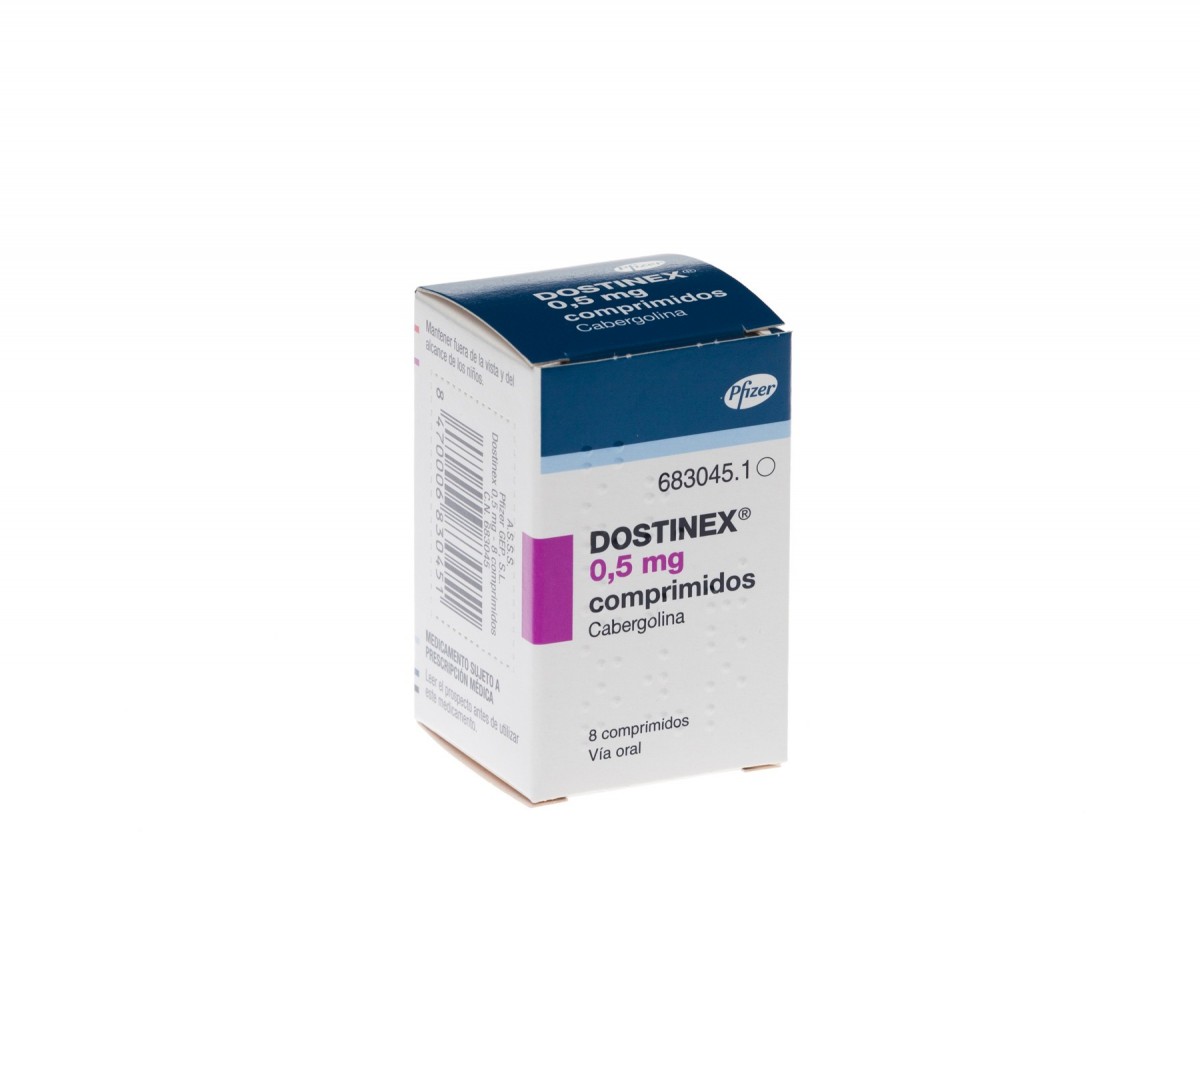 DOSTINEX 0,5 mg COMPRIMIDOS, 8 comprimidos fotografía del envase.